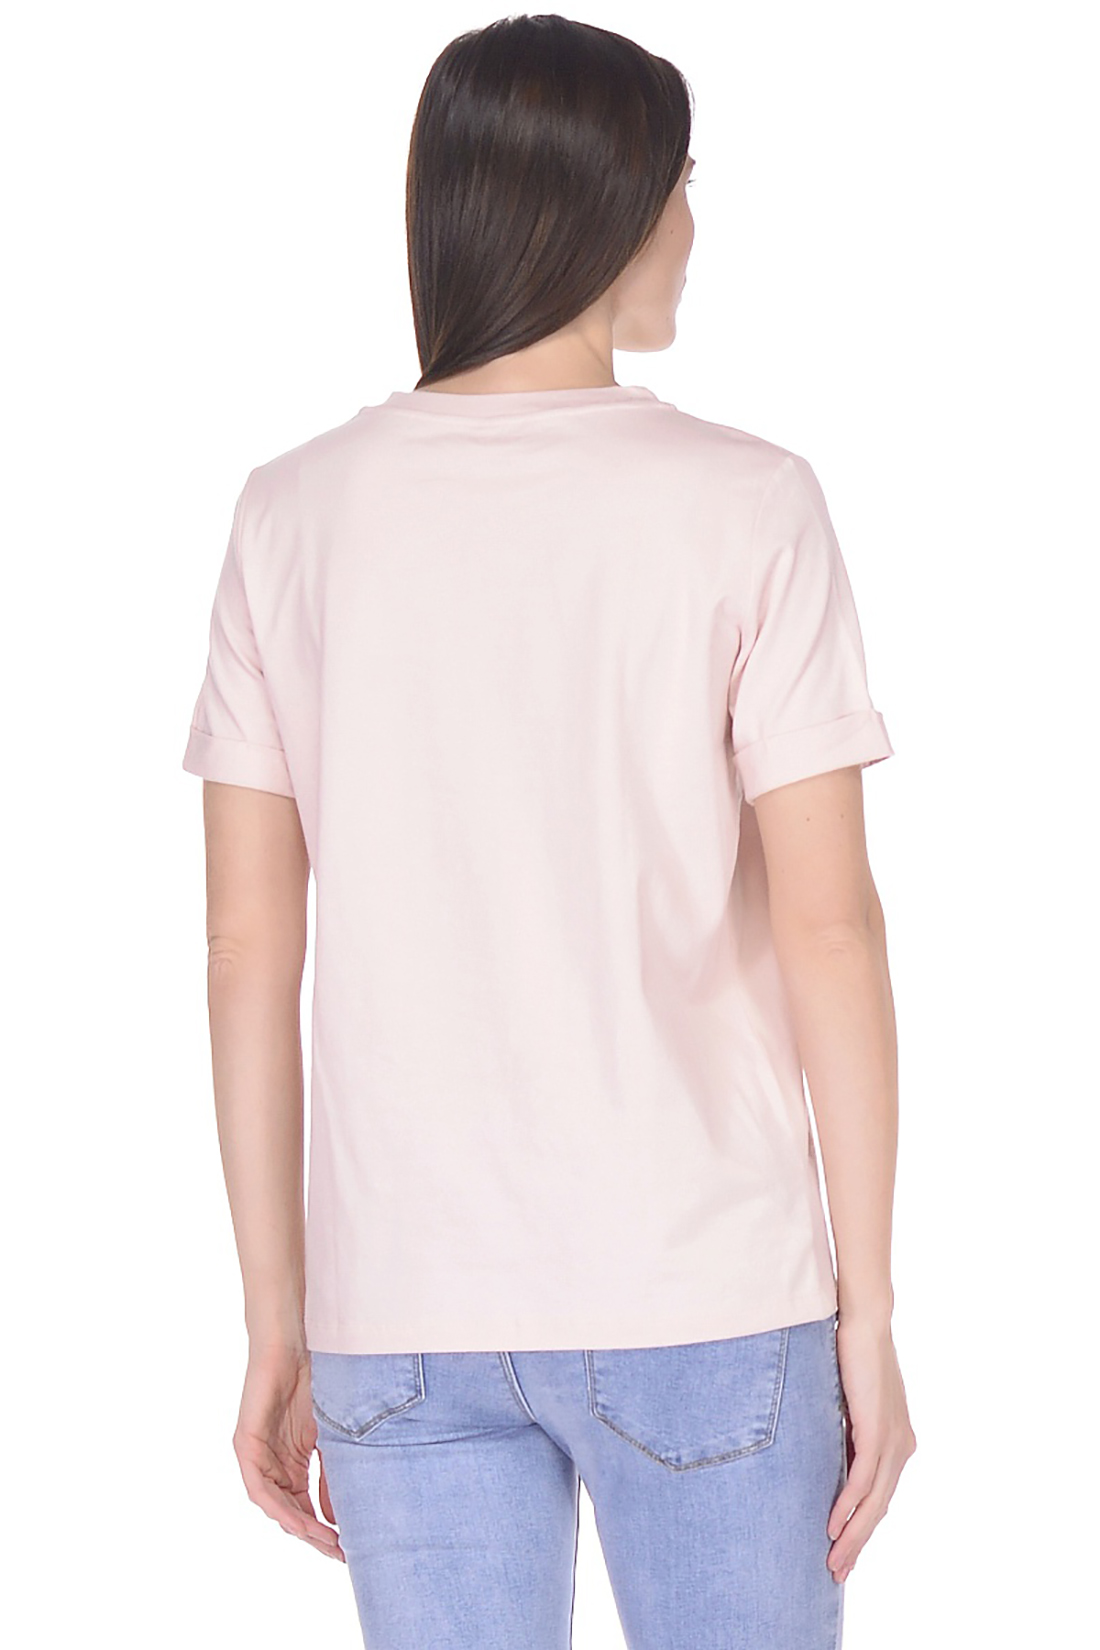 Прямая базовая футболка (арт. baon B238205), размер M, цвет розовый Прямая базовая футболка (арт. baon B238205) - фото 2